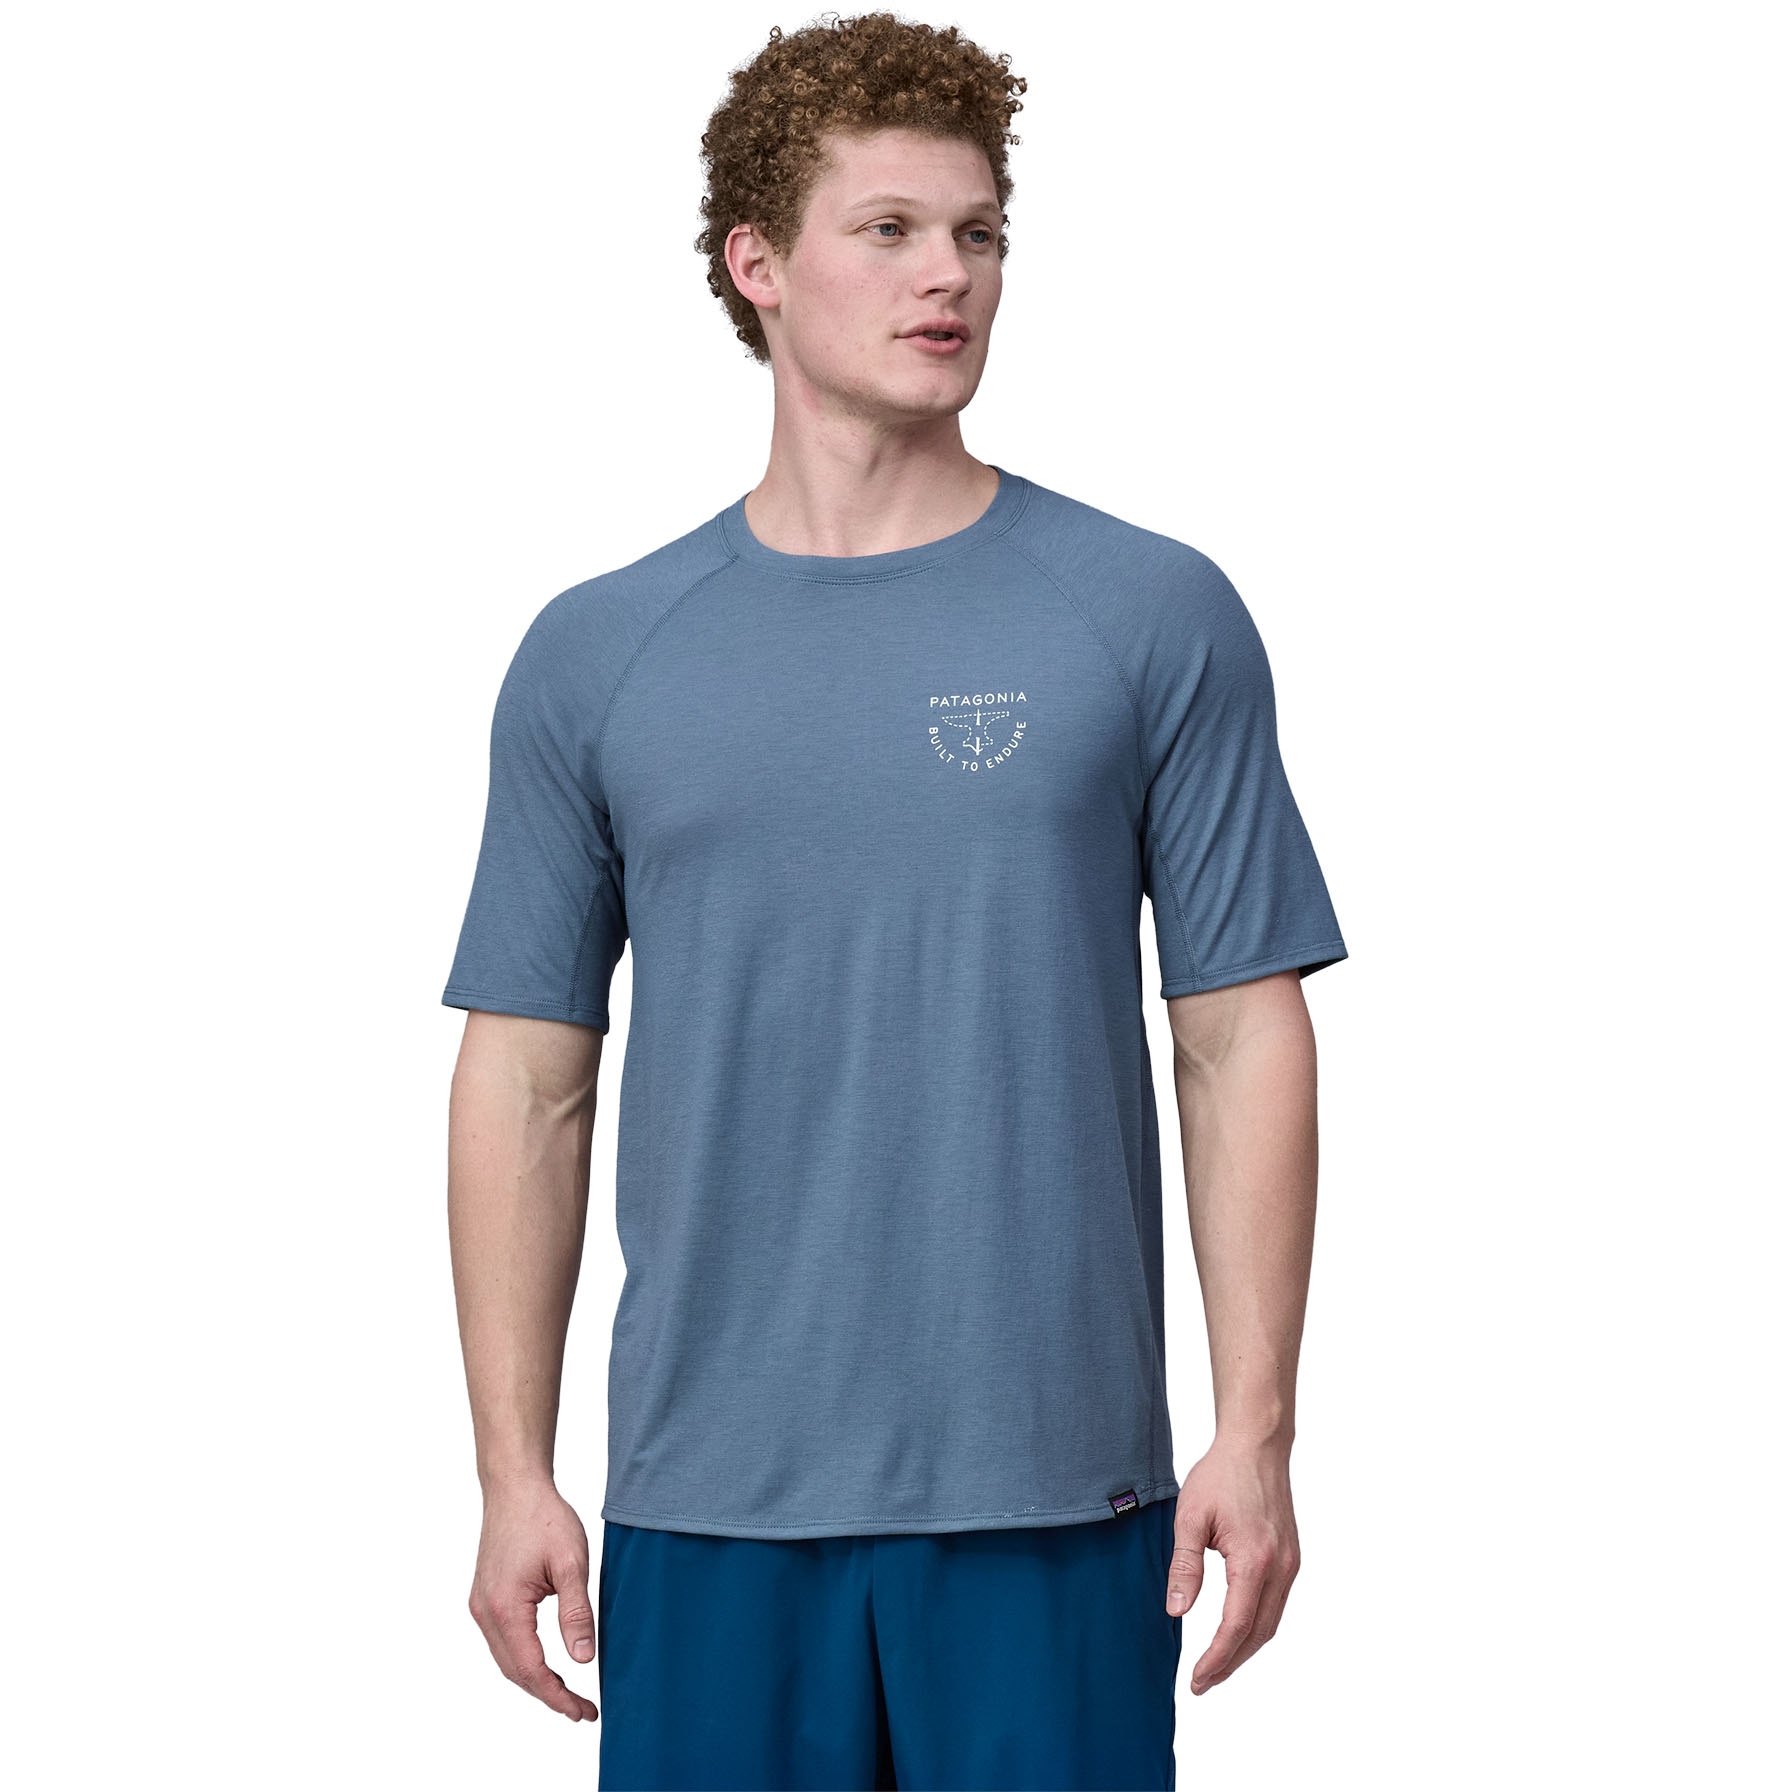 Produktbild von Patagonia Capilene Cool Trail Graphic T-Shirt Herren - Forge Mark Crest: Utility Blue